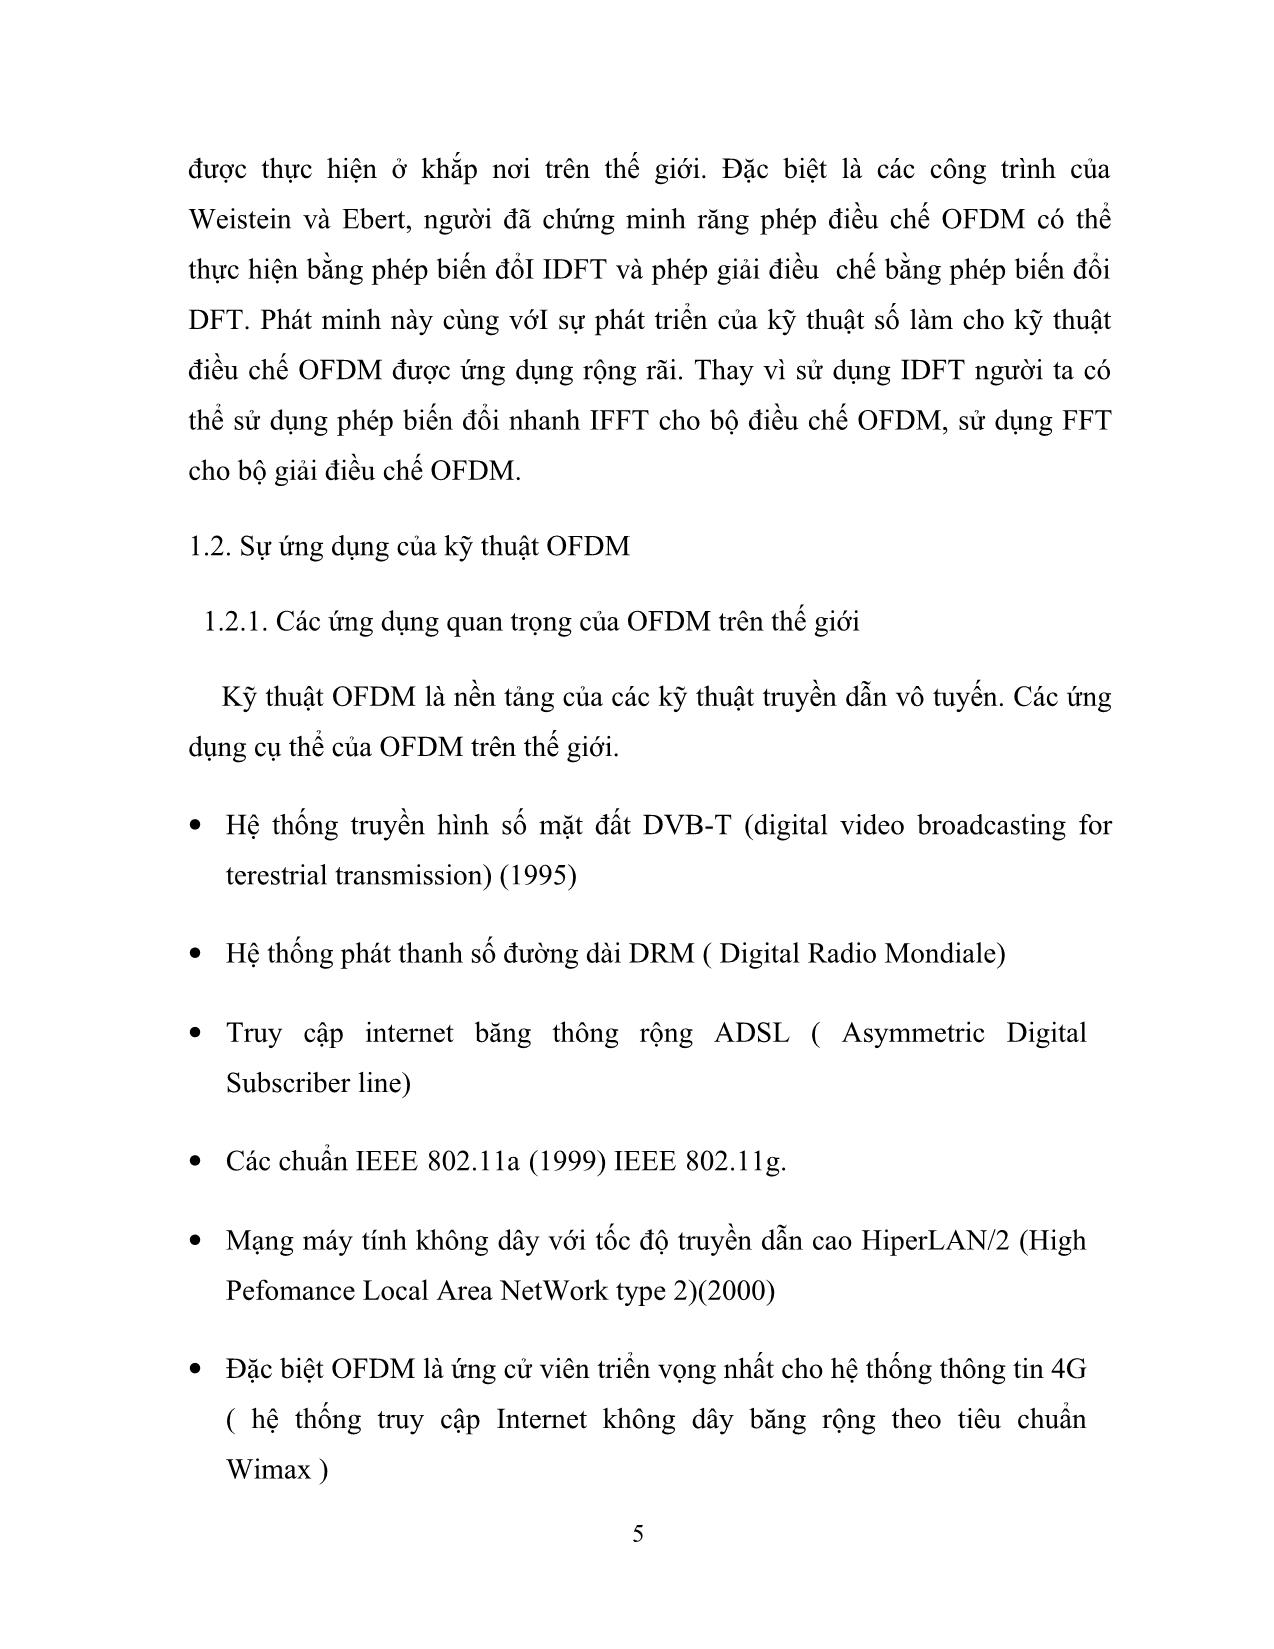 Tiểu luận OFDM và ứng dụng trong truyền hình số mặt đất DVB-T trang 5